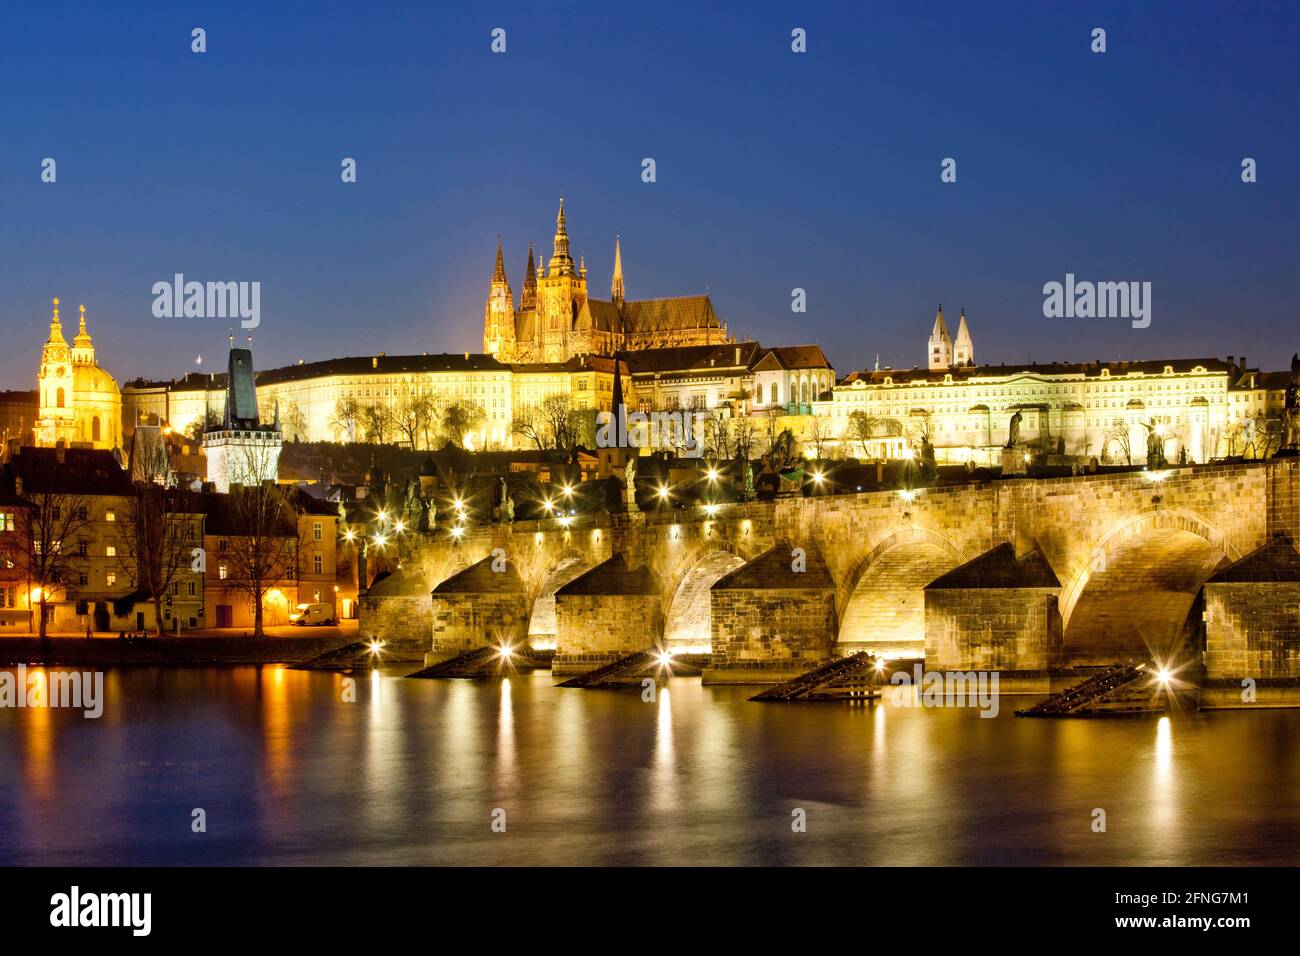 Praga, República Checa. Castillo de Hradcany y el puente de Carlos al atardecer. Foto de stock